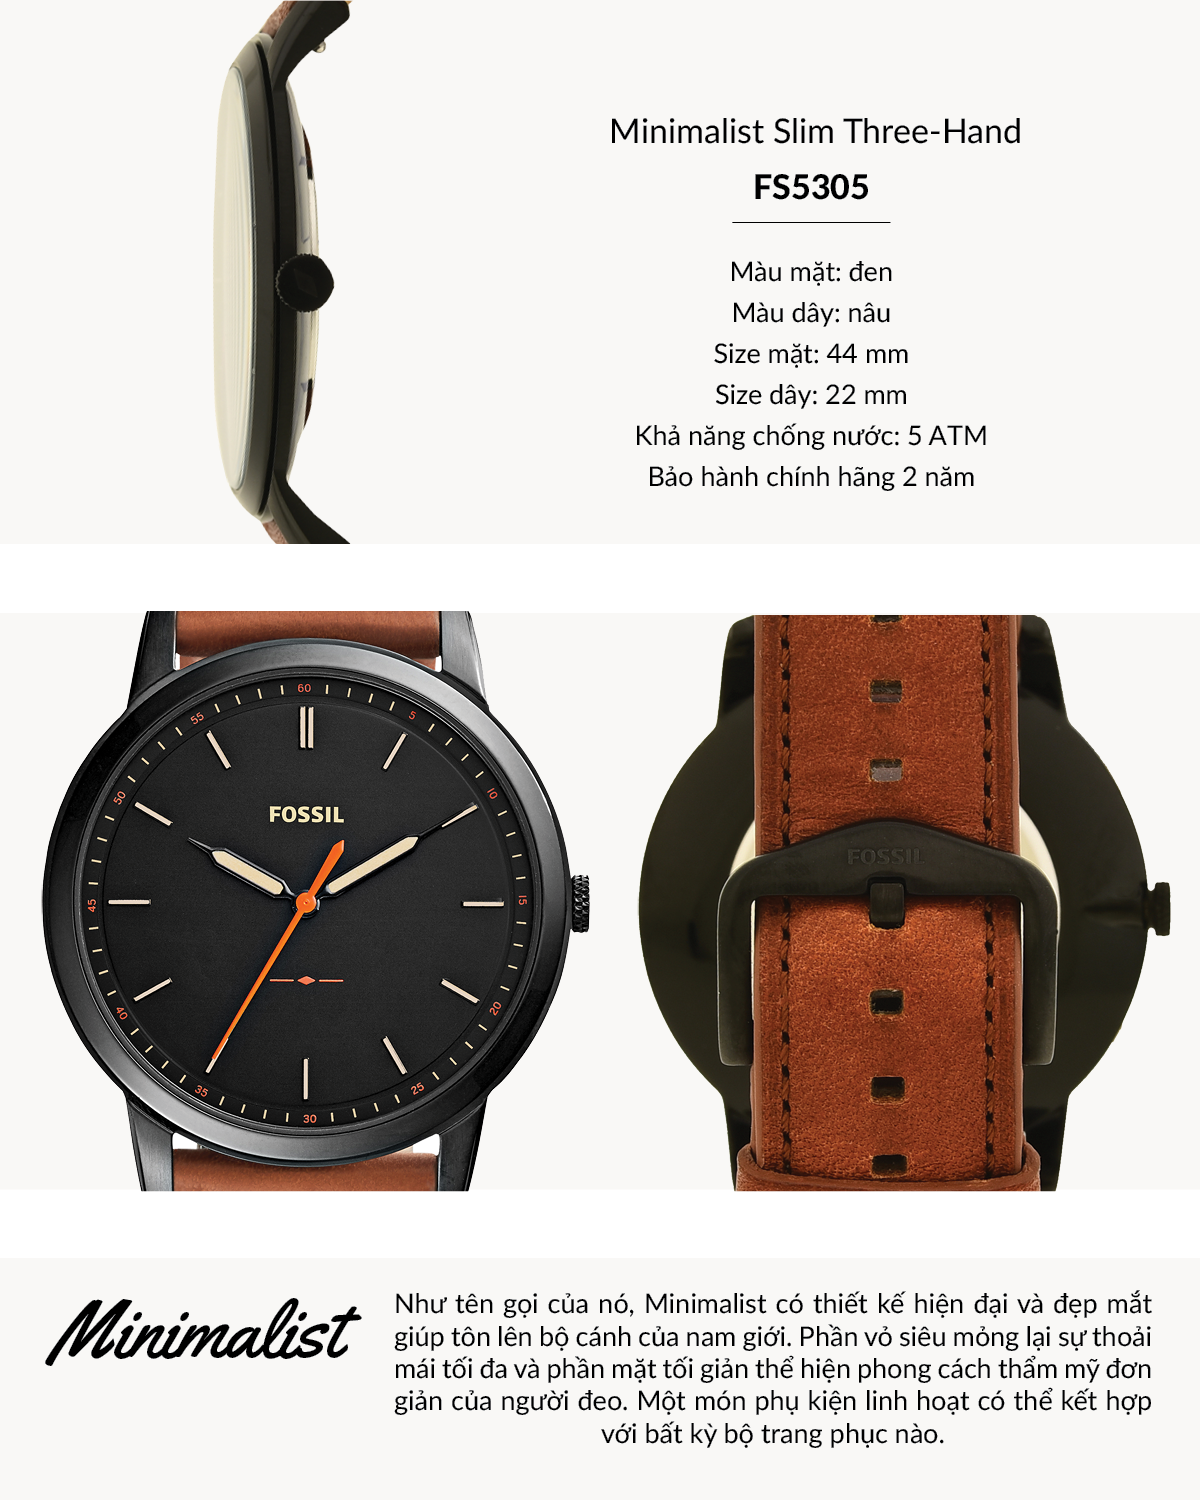 Top 5 đồng hồ Fossil chính hãng cực chất cho người đeo - Danawatch